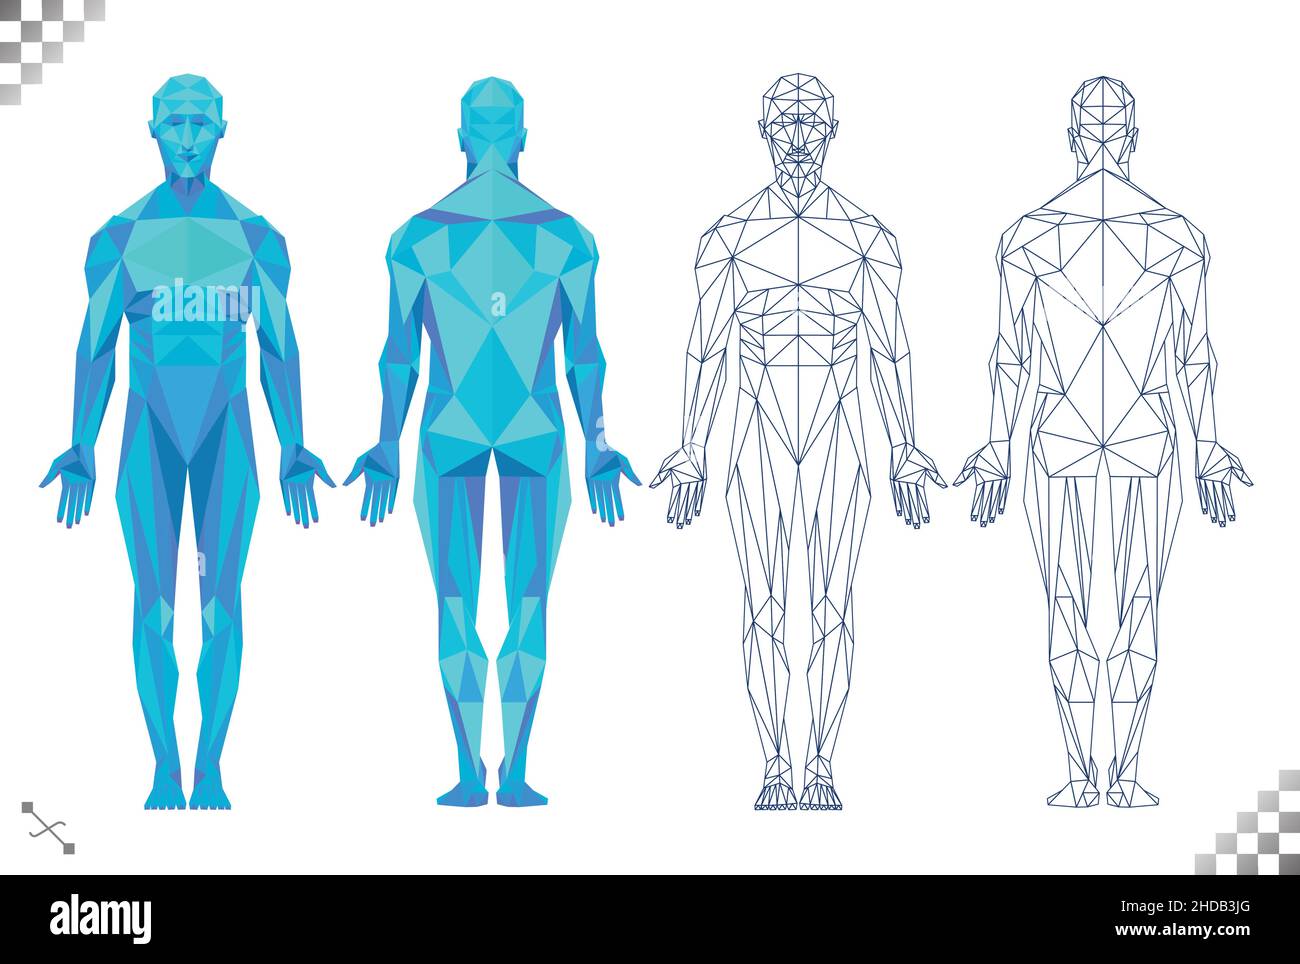 faible poly high tech bleu couleur corps humain triangles ligne noire art transparent fond. Basé sur les modèles de muscle masculin et la physiologie dos et avant Illustration de Vecteur